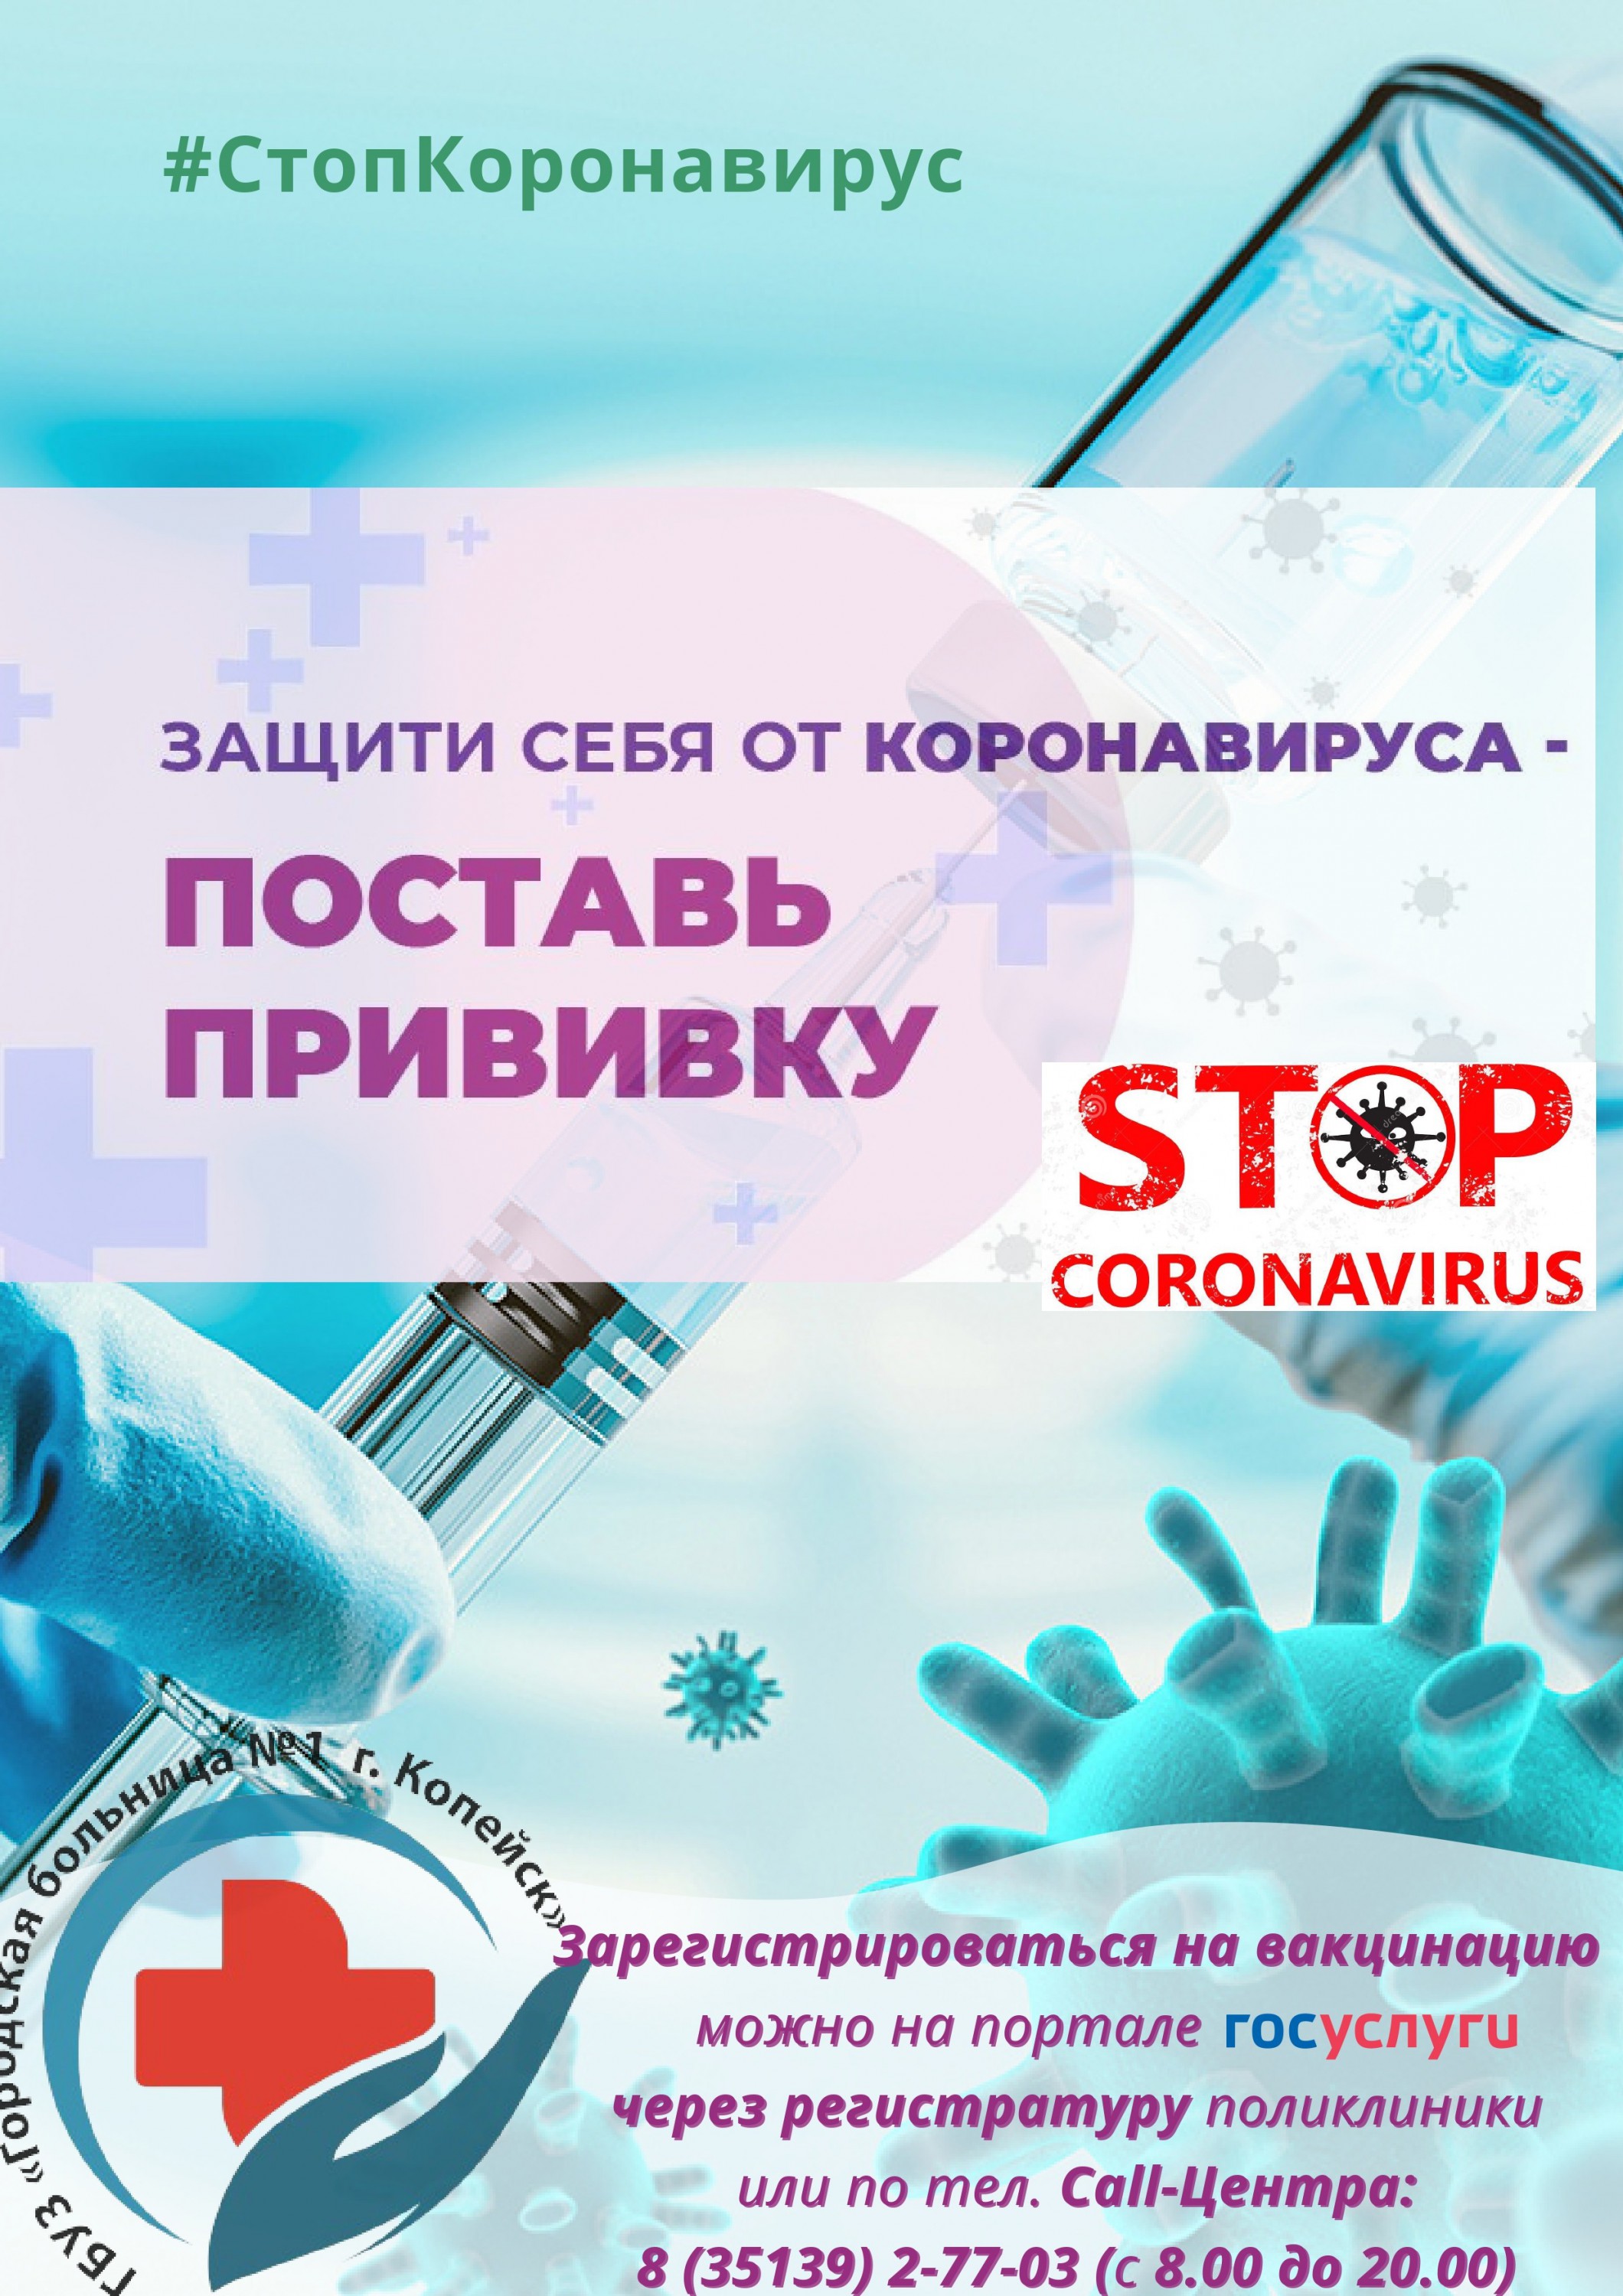 Информация о необходимости проведения вакцинации против новой коронавирусной инфекции COVID-19.